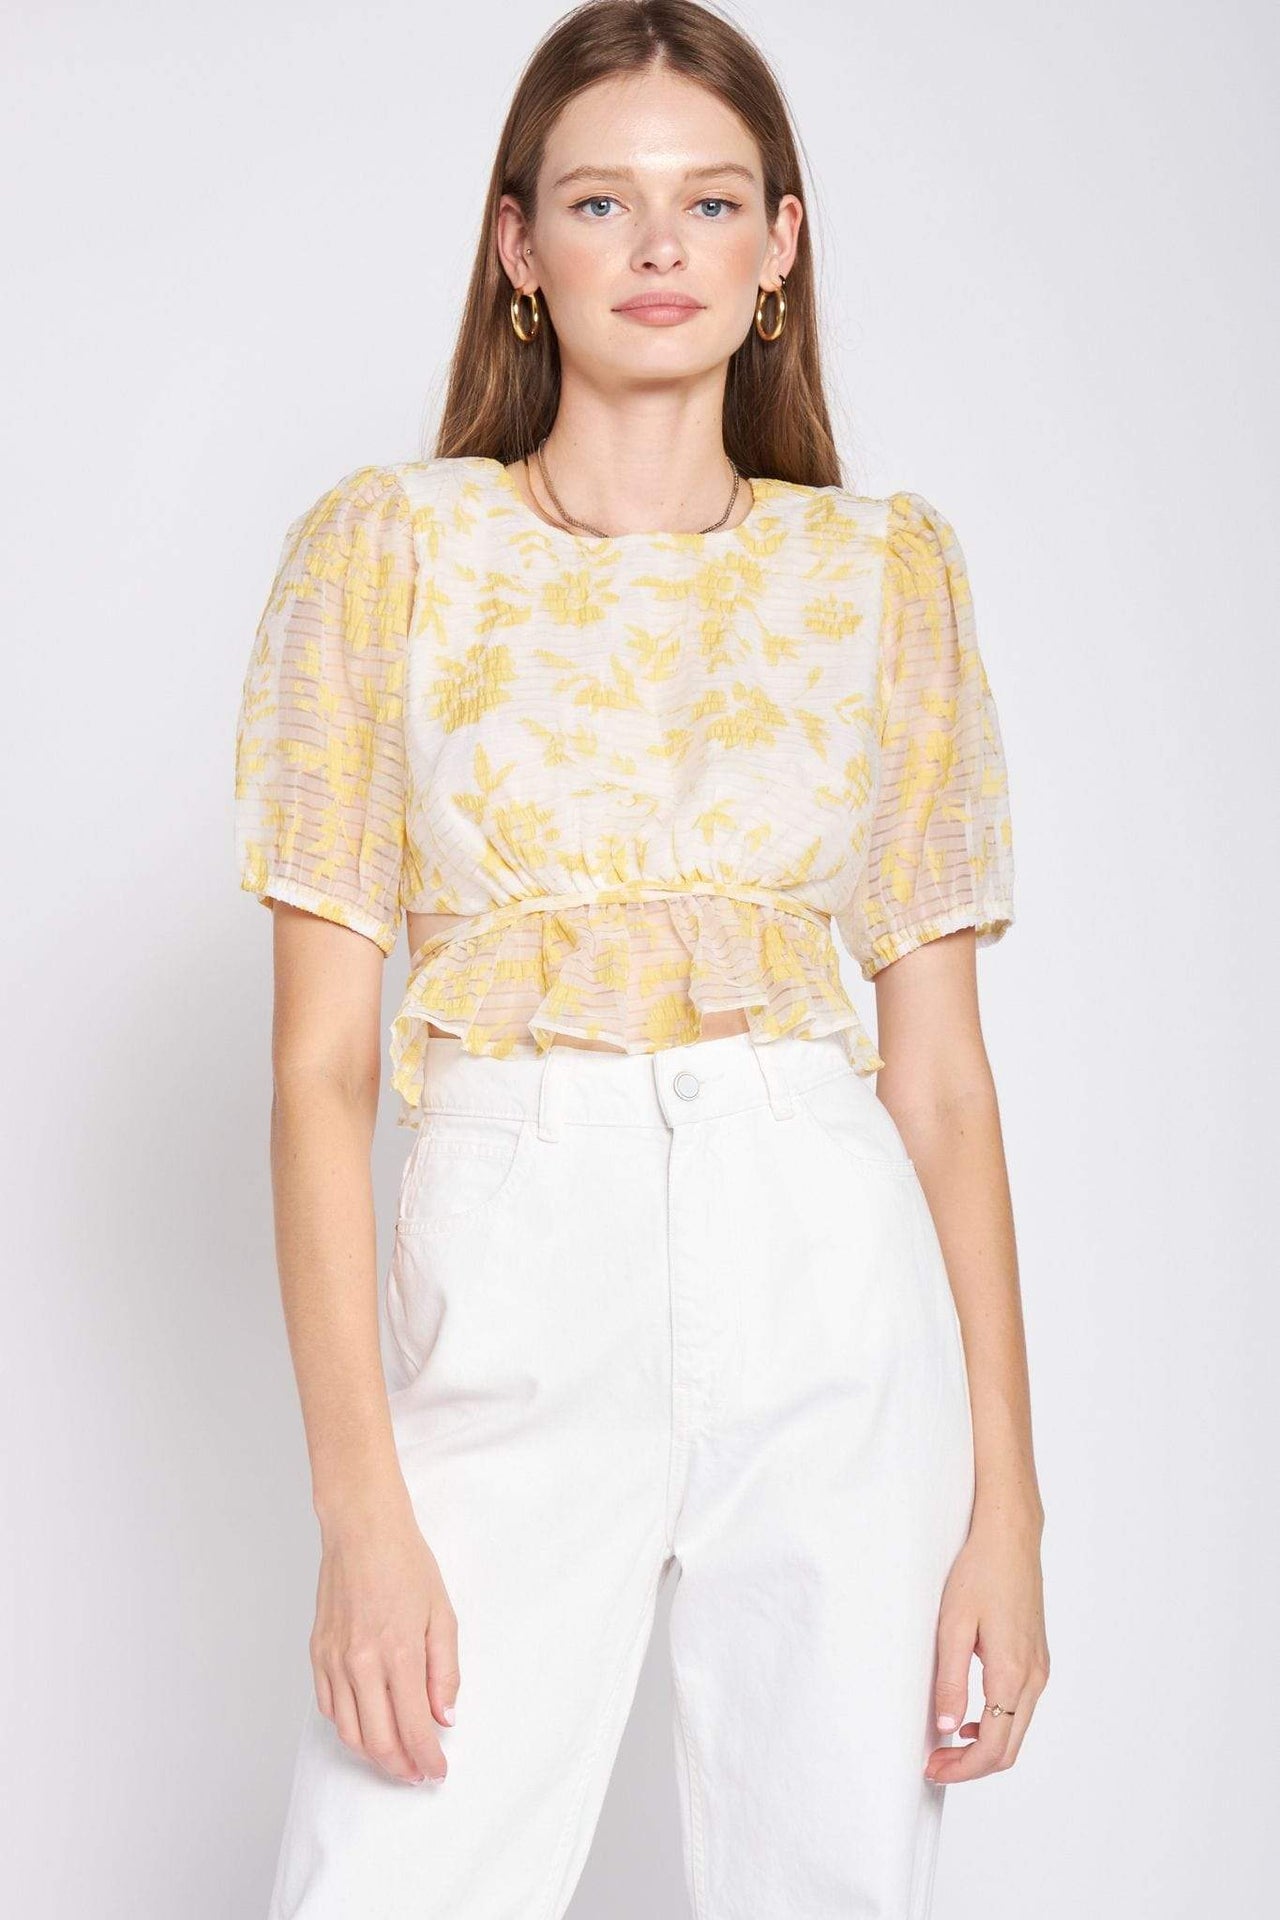 Audrey Top Yellow, Short Blouse by En Saison | LIT Boutique